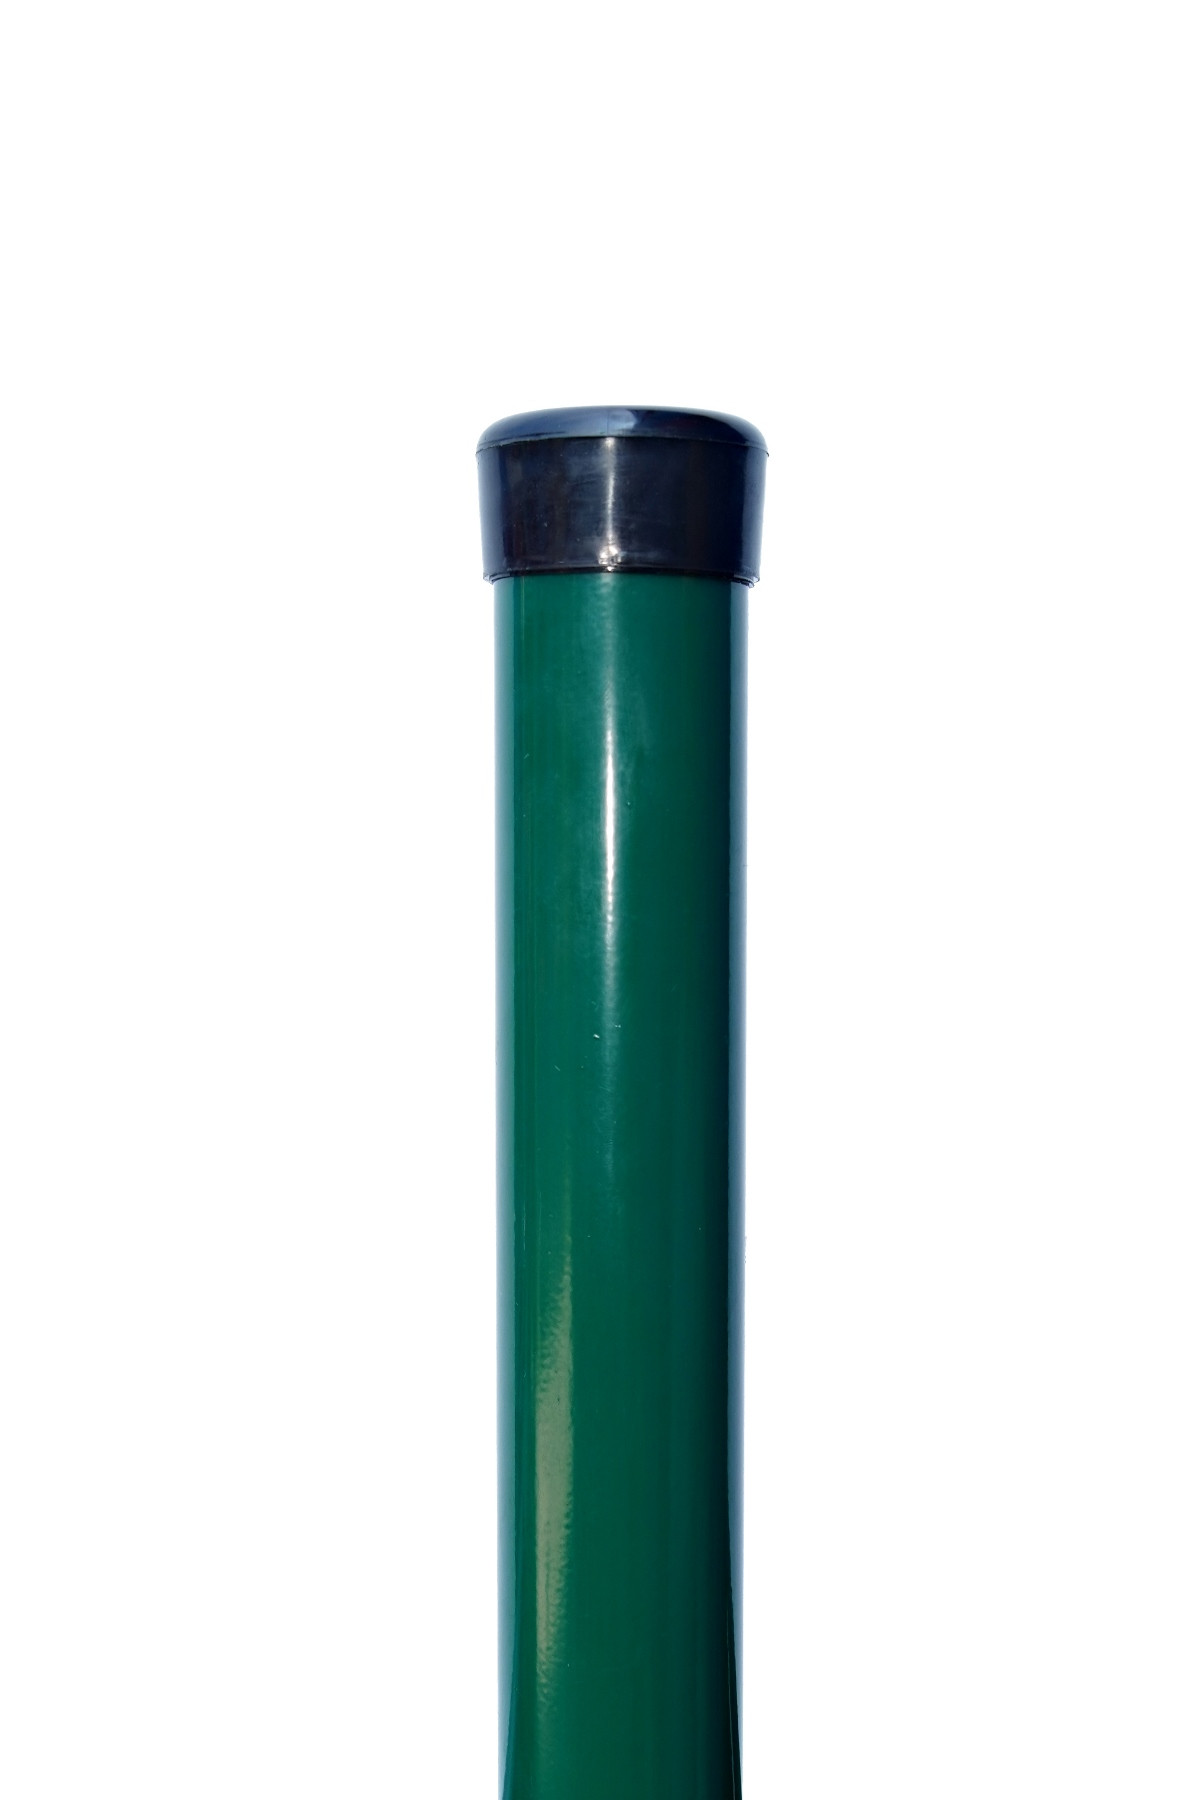 STLPIK PVC 38 / 200 CM              (1,5)               ZN+PVC6005-ZELENY